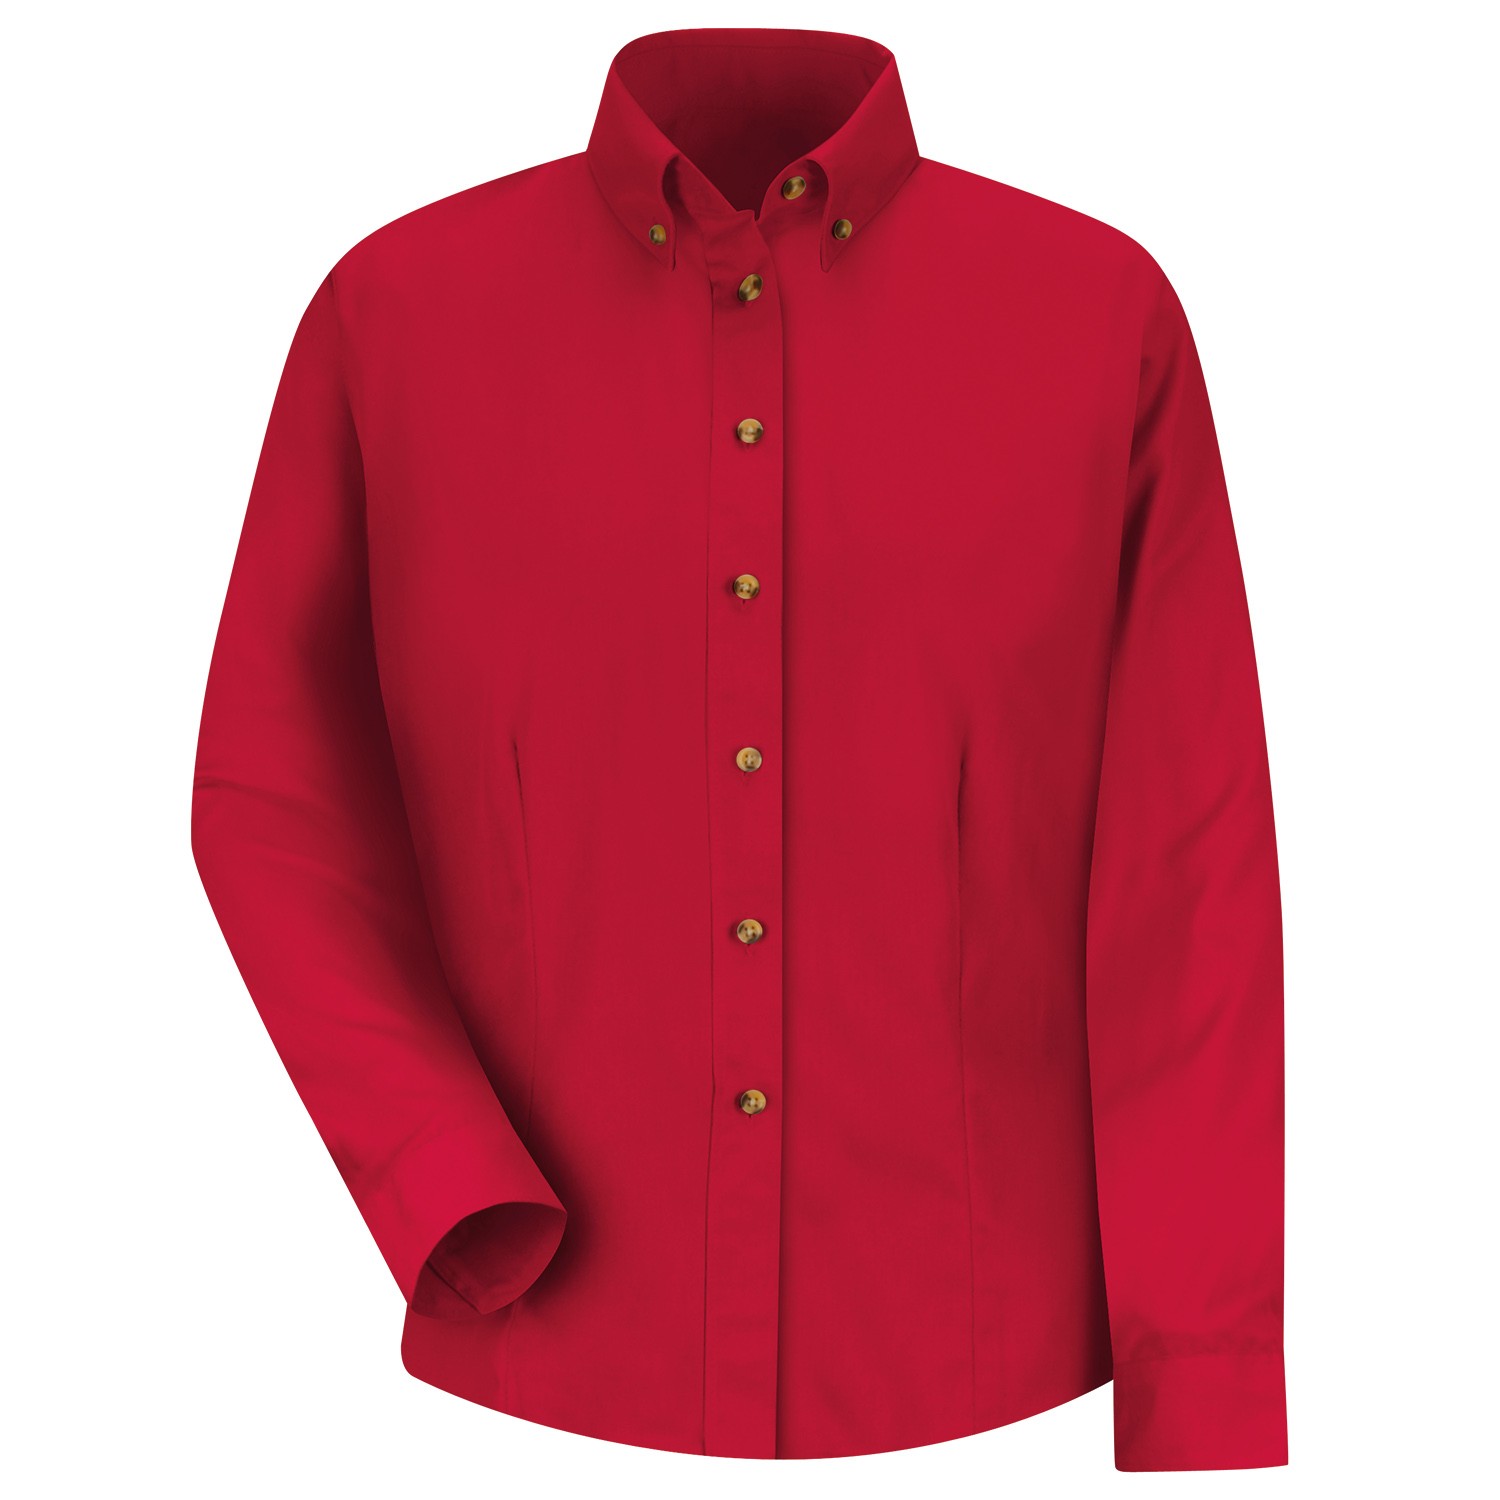 red kap shirts bulk